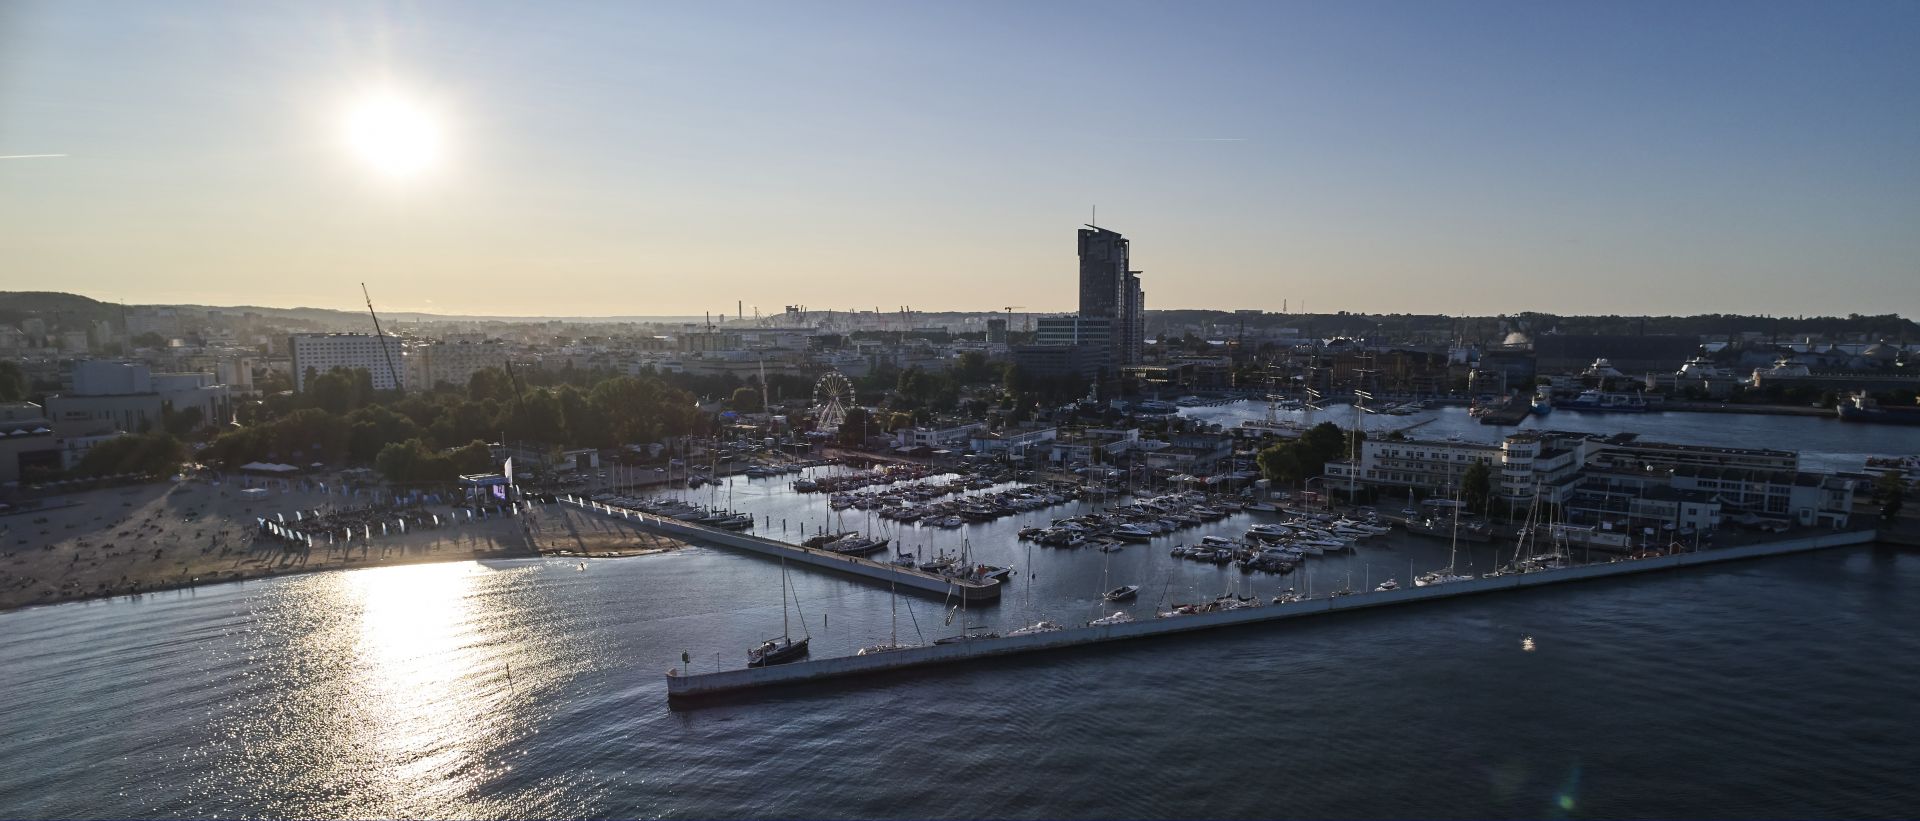 Marina Gdynia zdjęcie z drona podczas zachodu słońca 